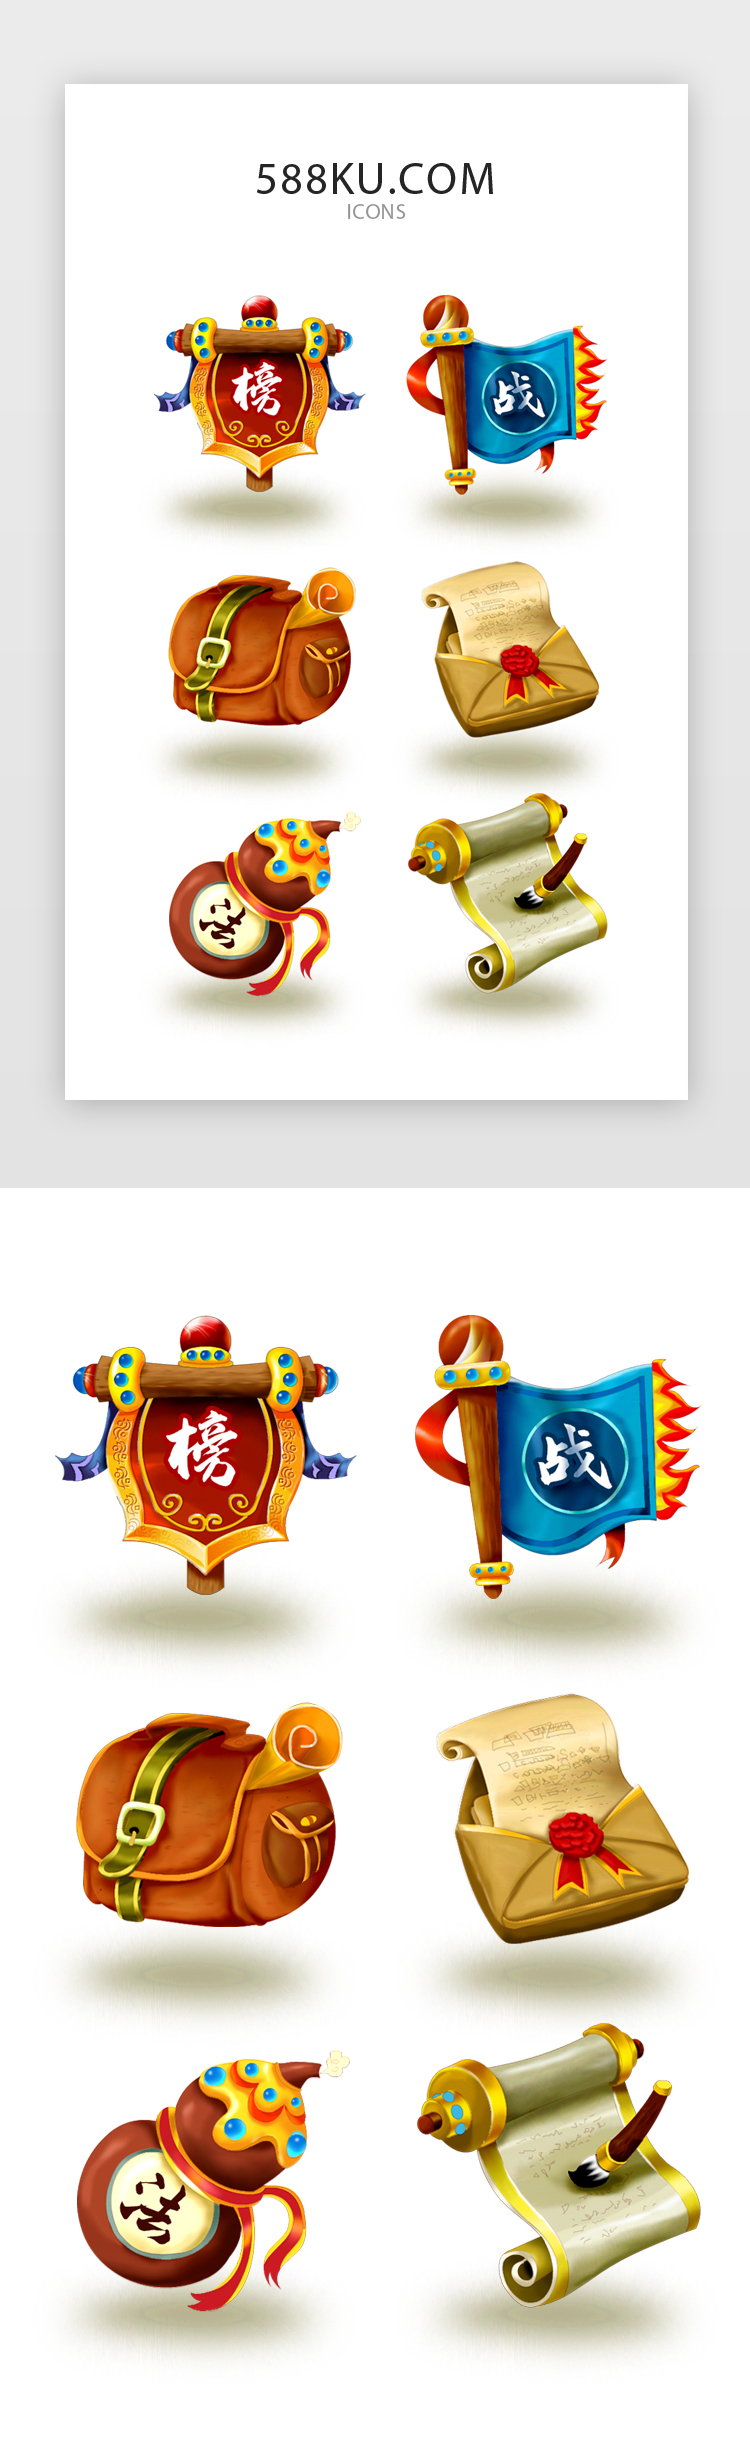 水彩风格精致RPG游戏图标icons图片